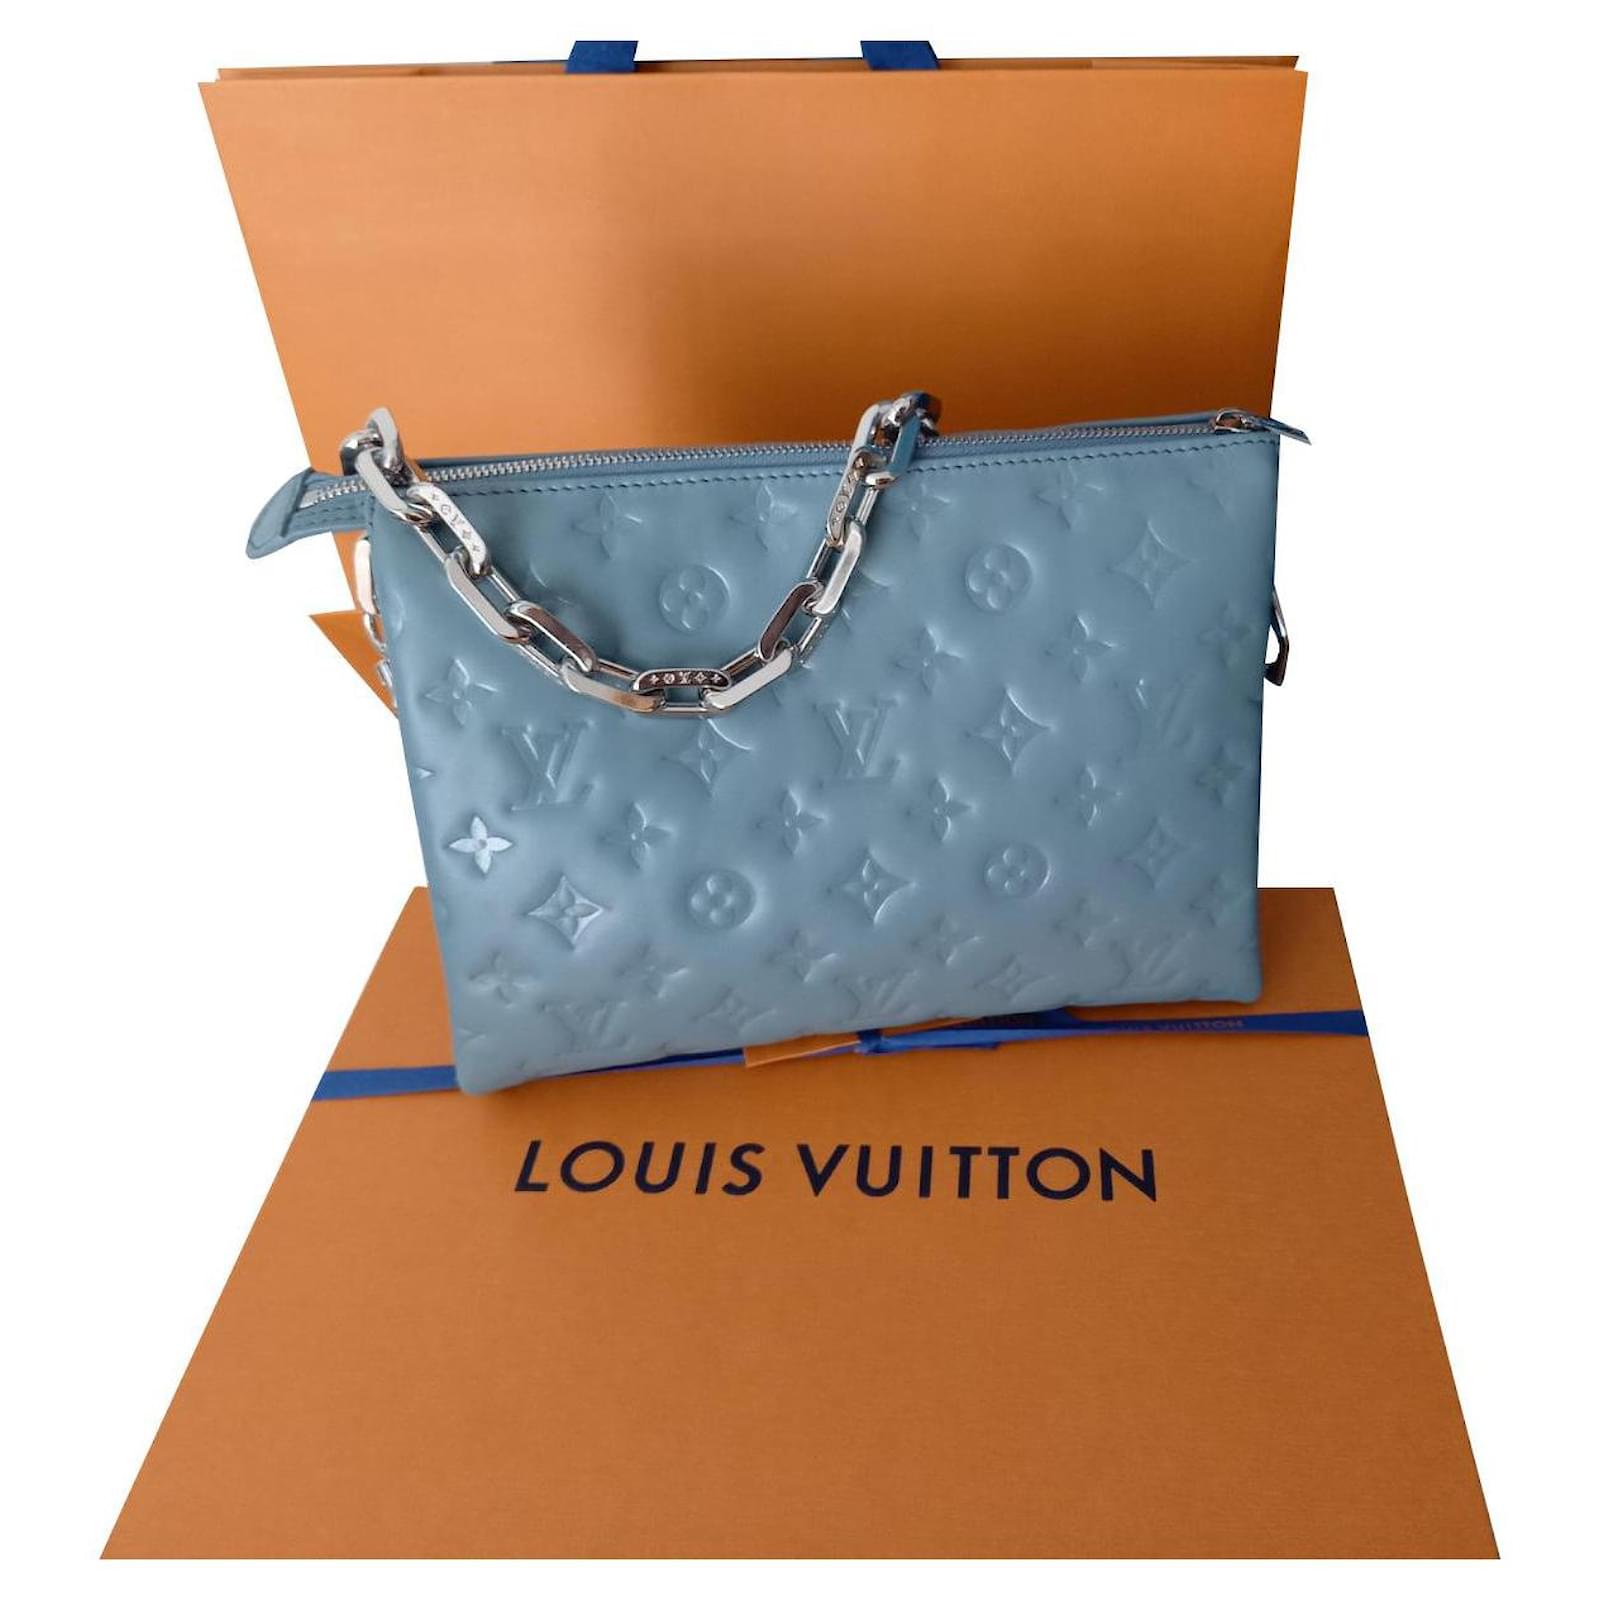 Louis Vuitton Coussin PM